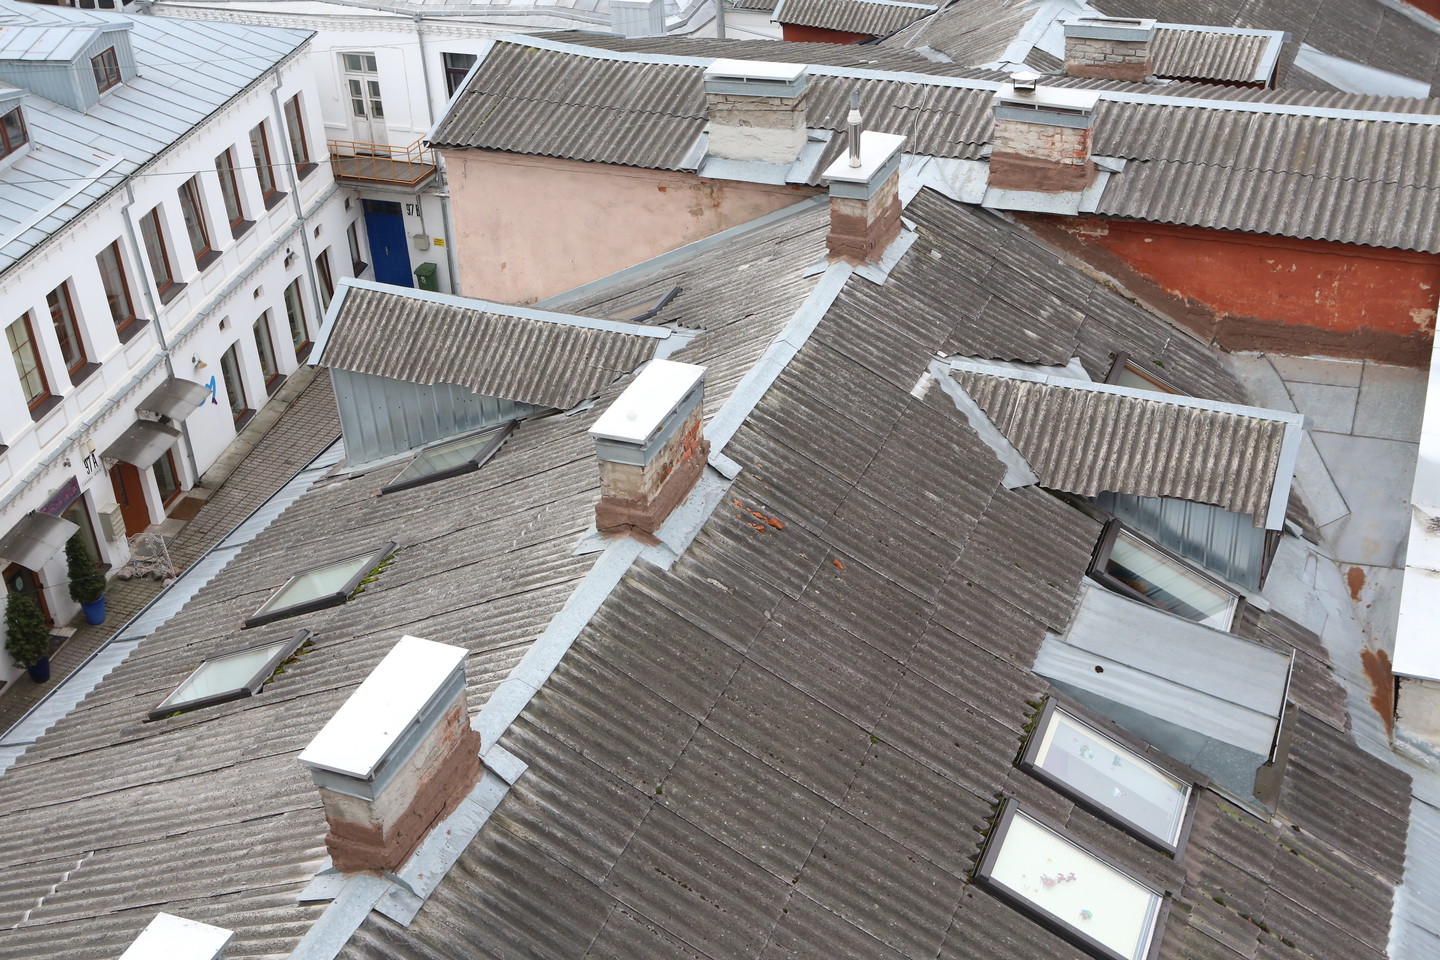  Asbesto šiferio stogų danga - ir žmogui, ir aplinkai pavojingos atliekos, tačiau jų itin vangiai atsikratoma.  <br> M.Patašiaus nuotr. 